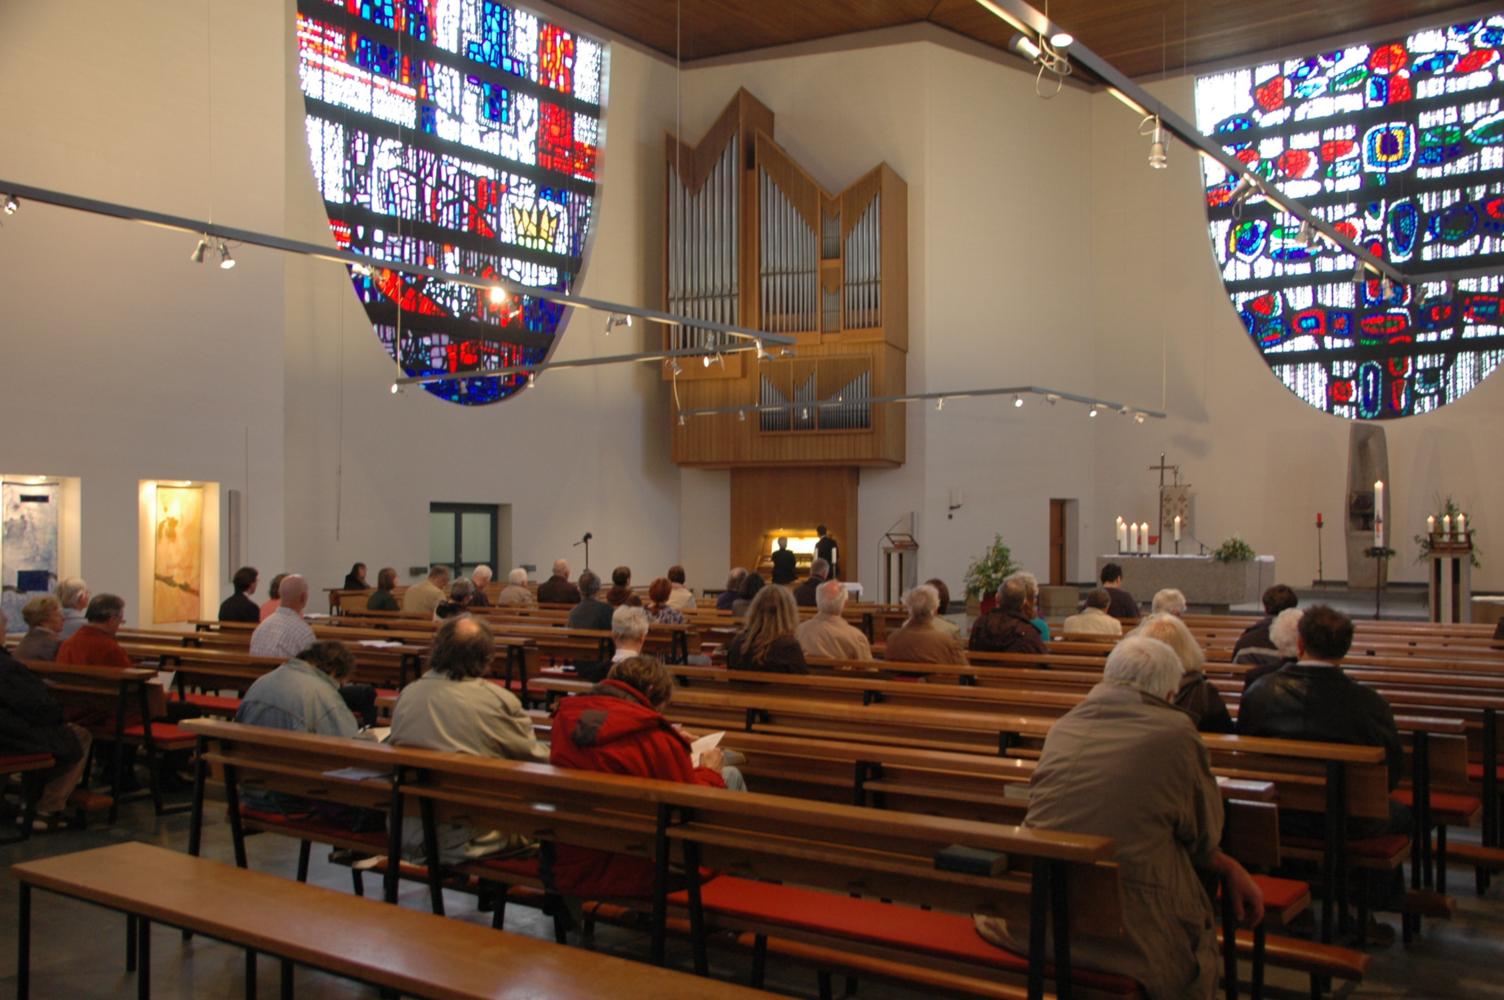 Orgelvesper vom 4. Mai 2014 mit Regionalkantor Thomas Wiegelmann (Bad Orb) (c) Förderverein St. Thomas Morus e.V.